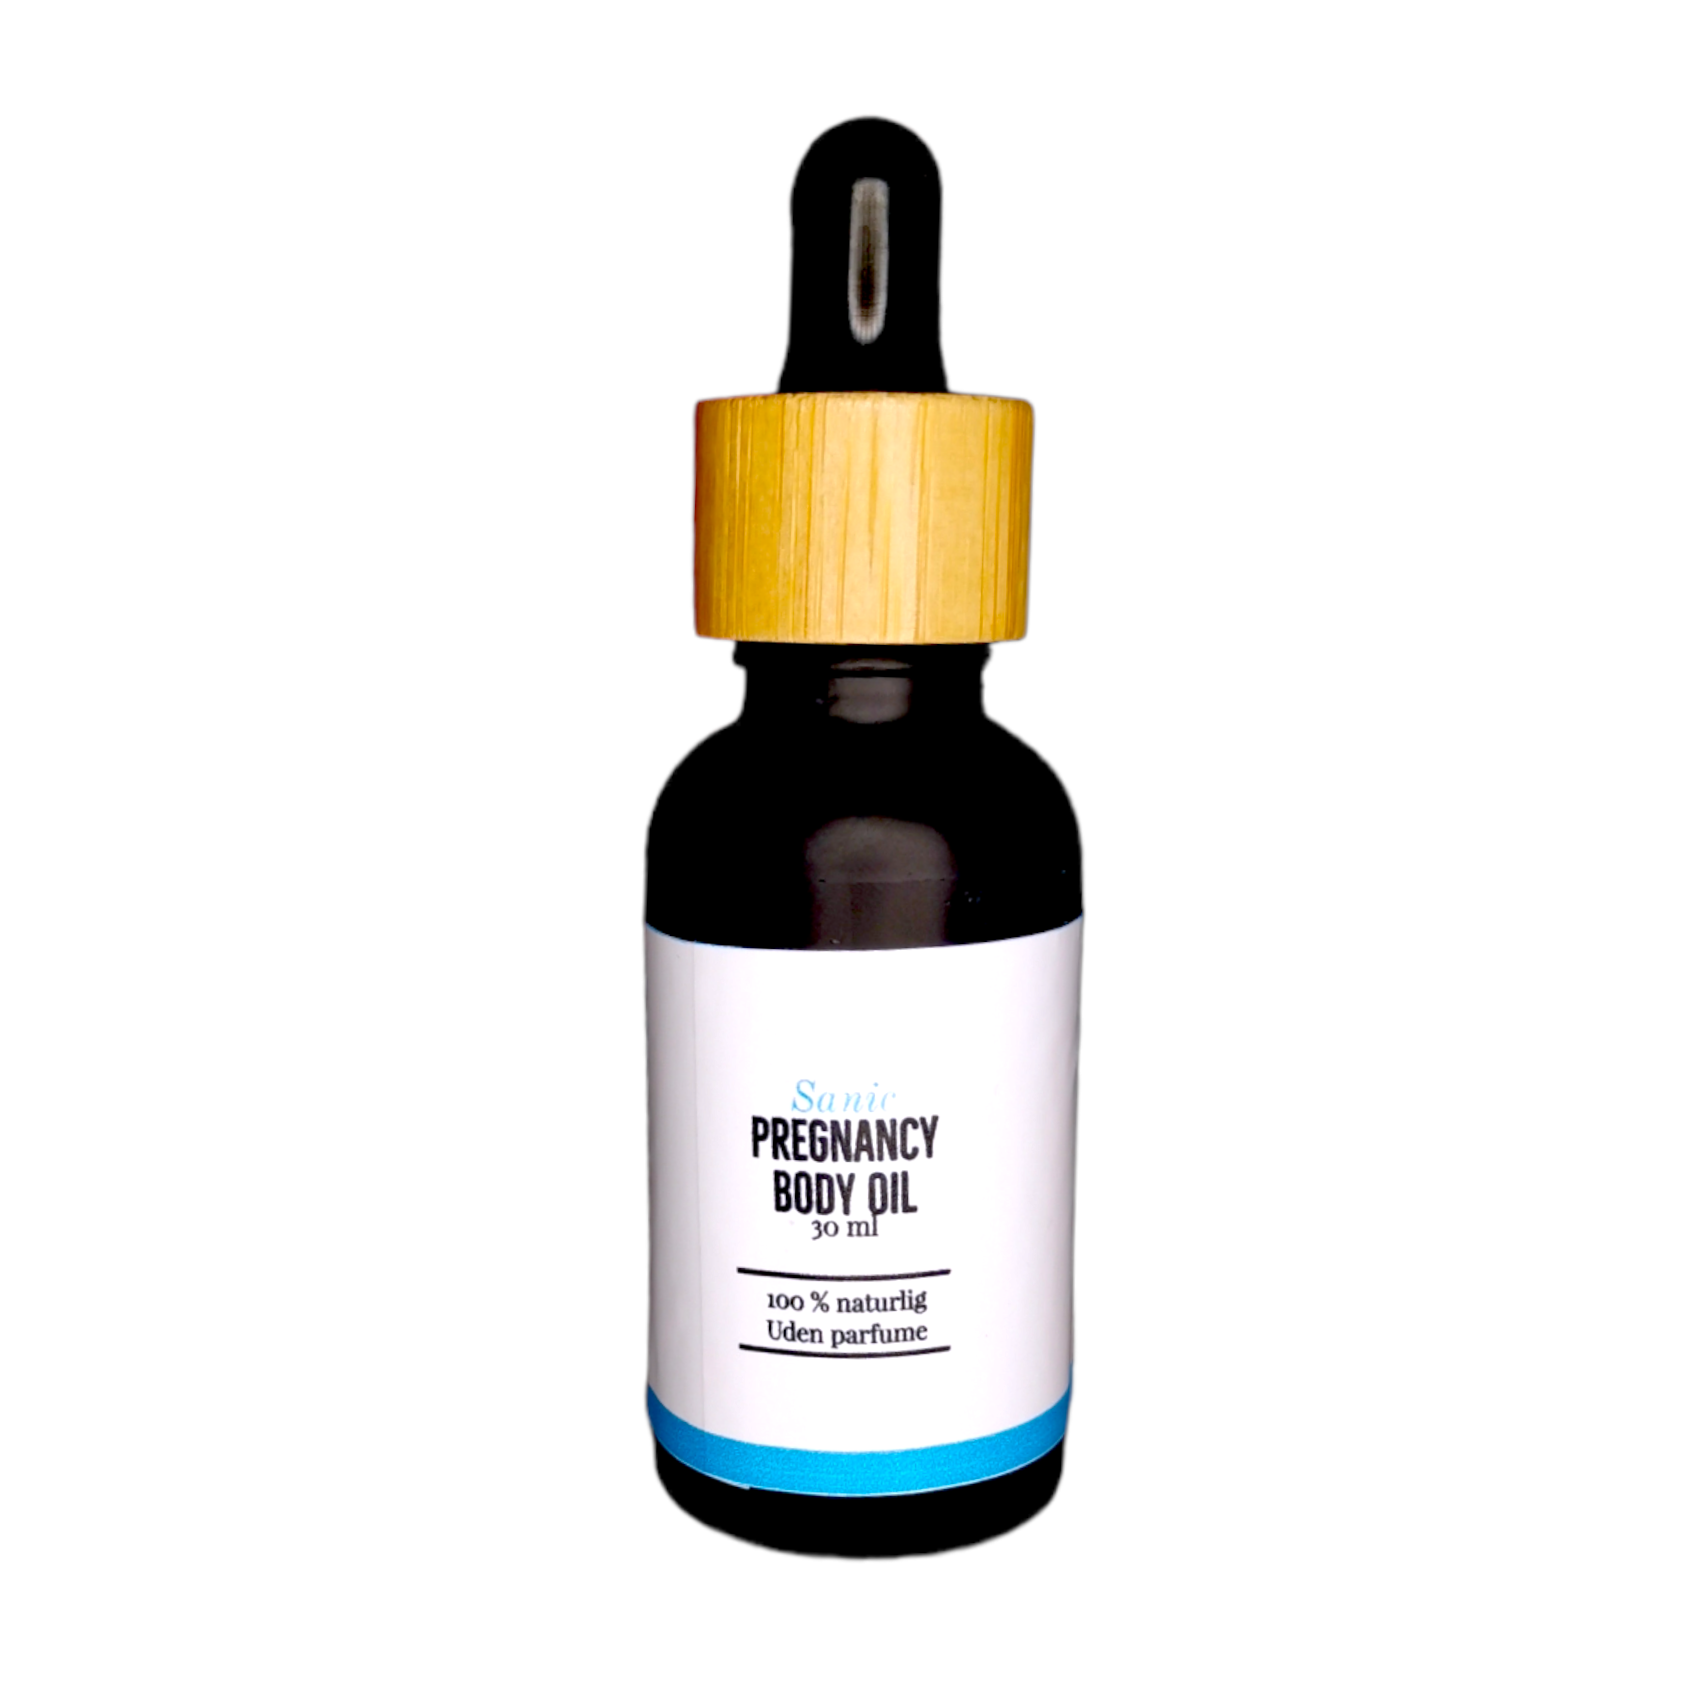 Periodisk lys s protein 2. sortering 30 ml Pregnancy Body Oil – Sanic